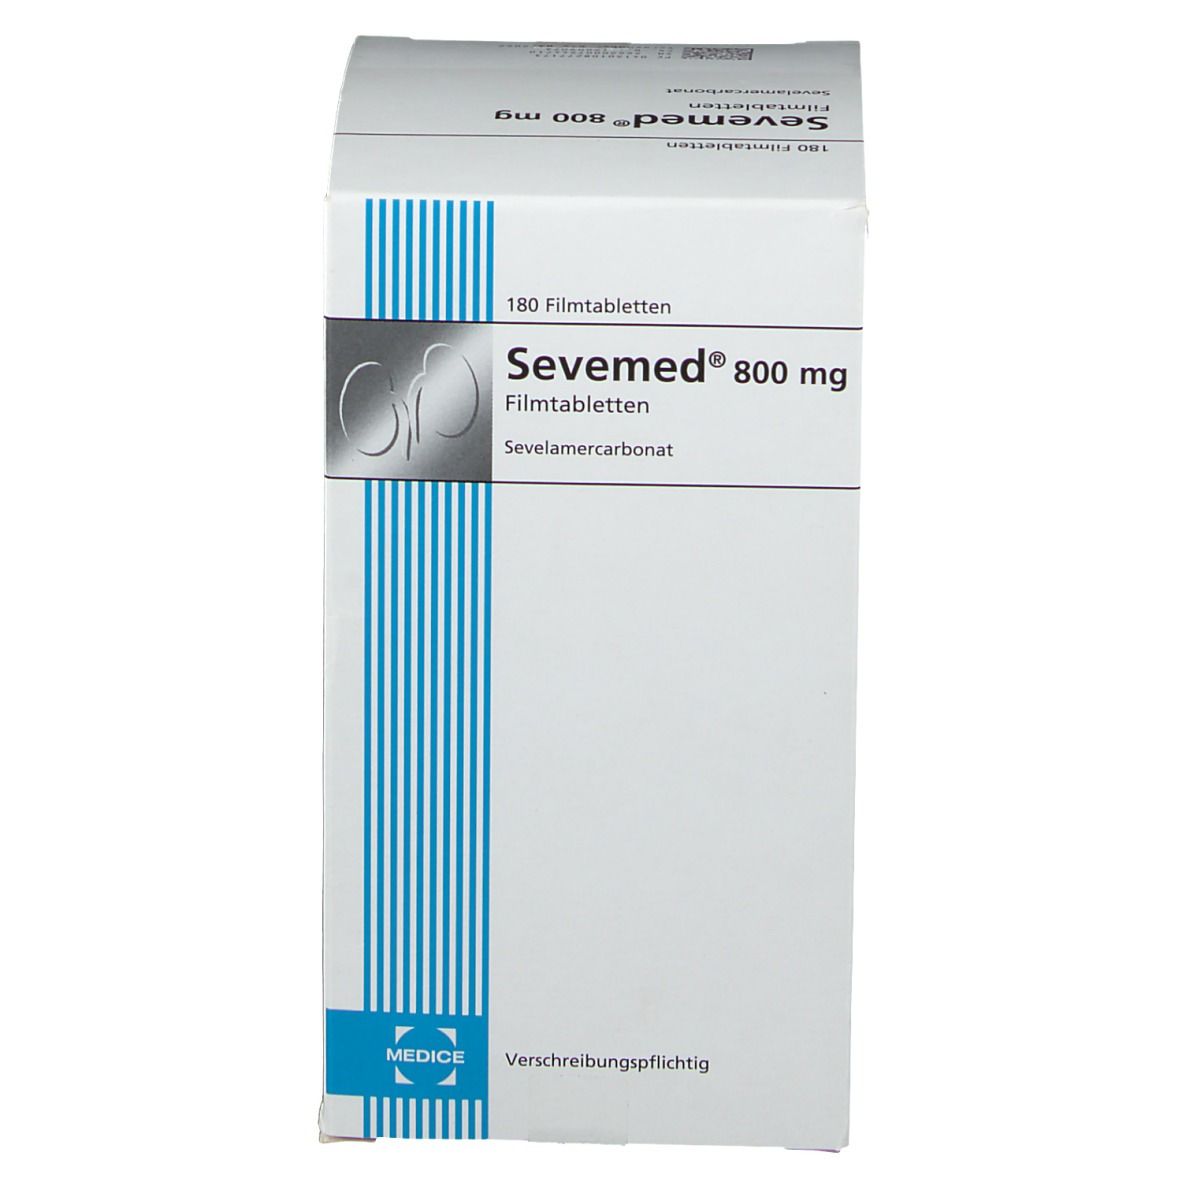 Sevemed® 800 mg